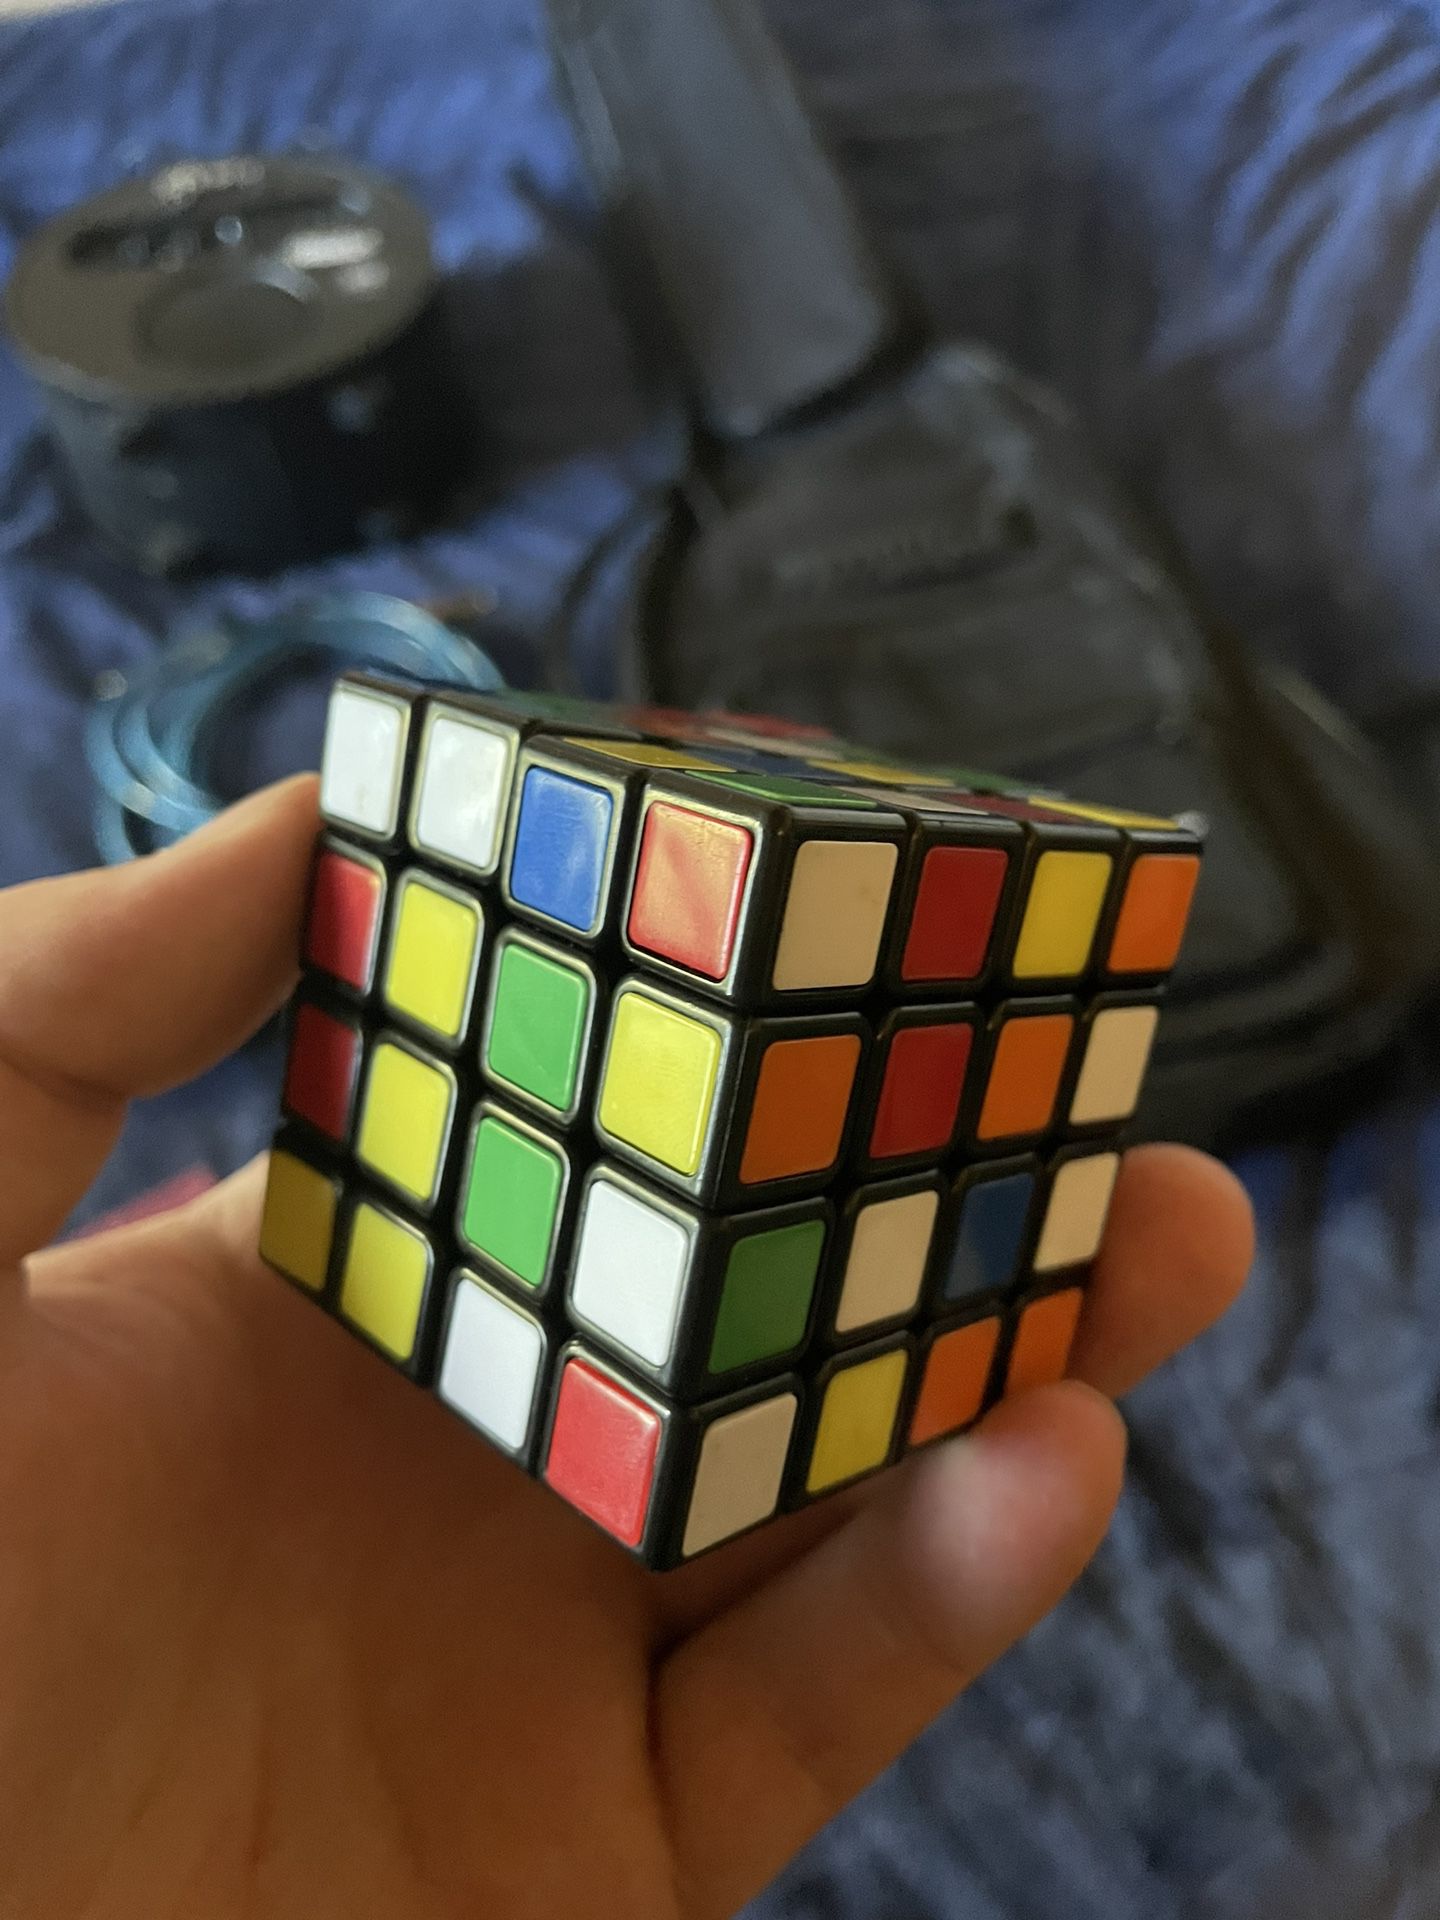 4x4 Rubix Cube